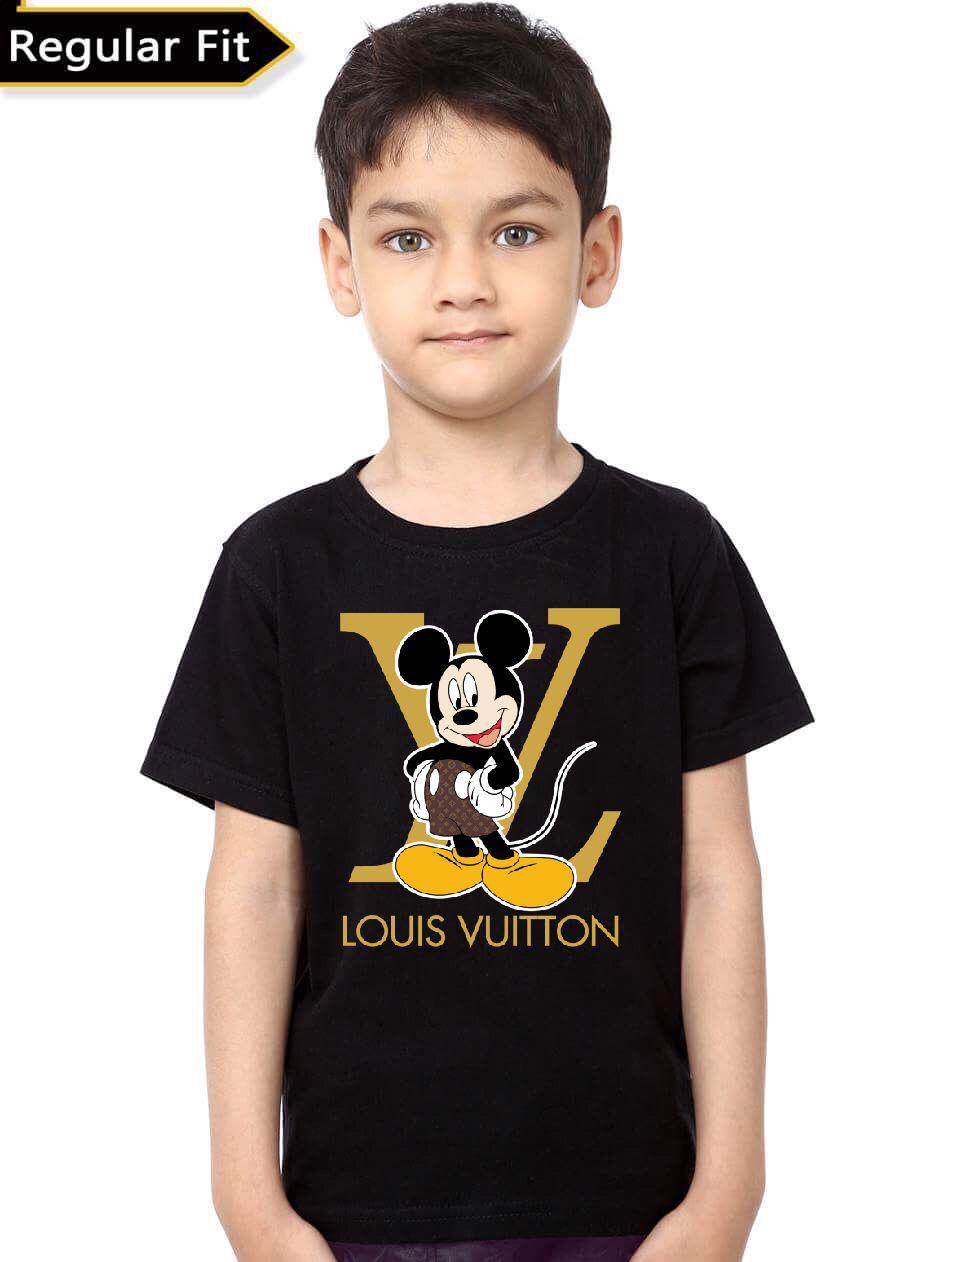 Louis Vuitton, Shirts & Tops, Authentic Louis Vuitton Kids Shirt